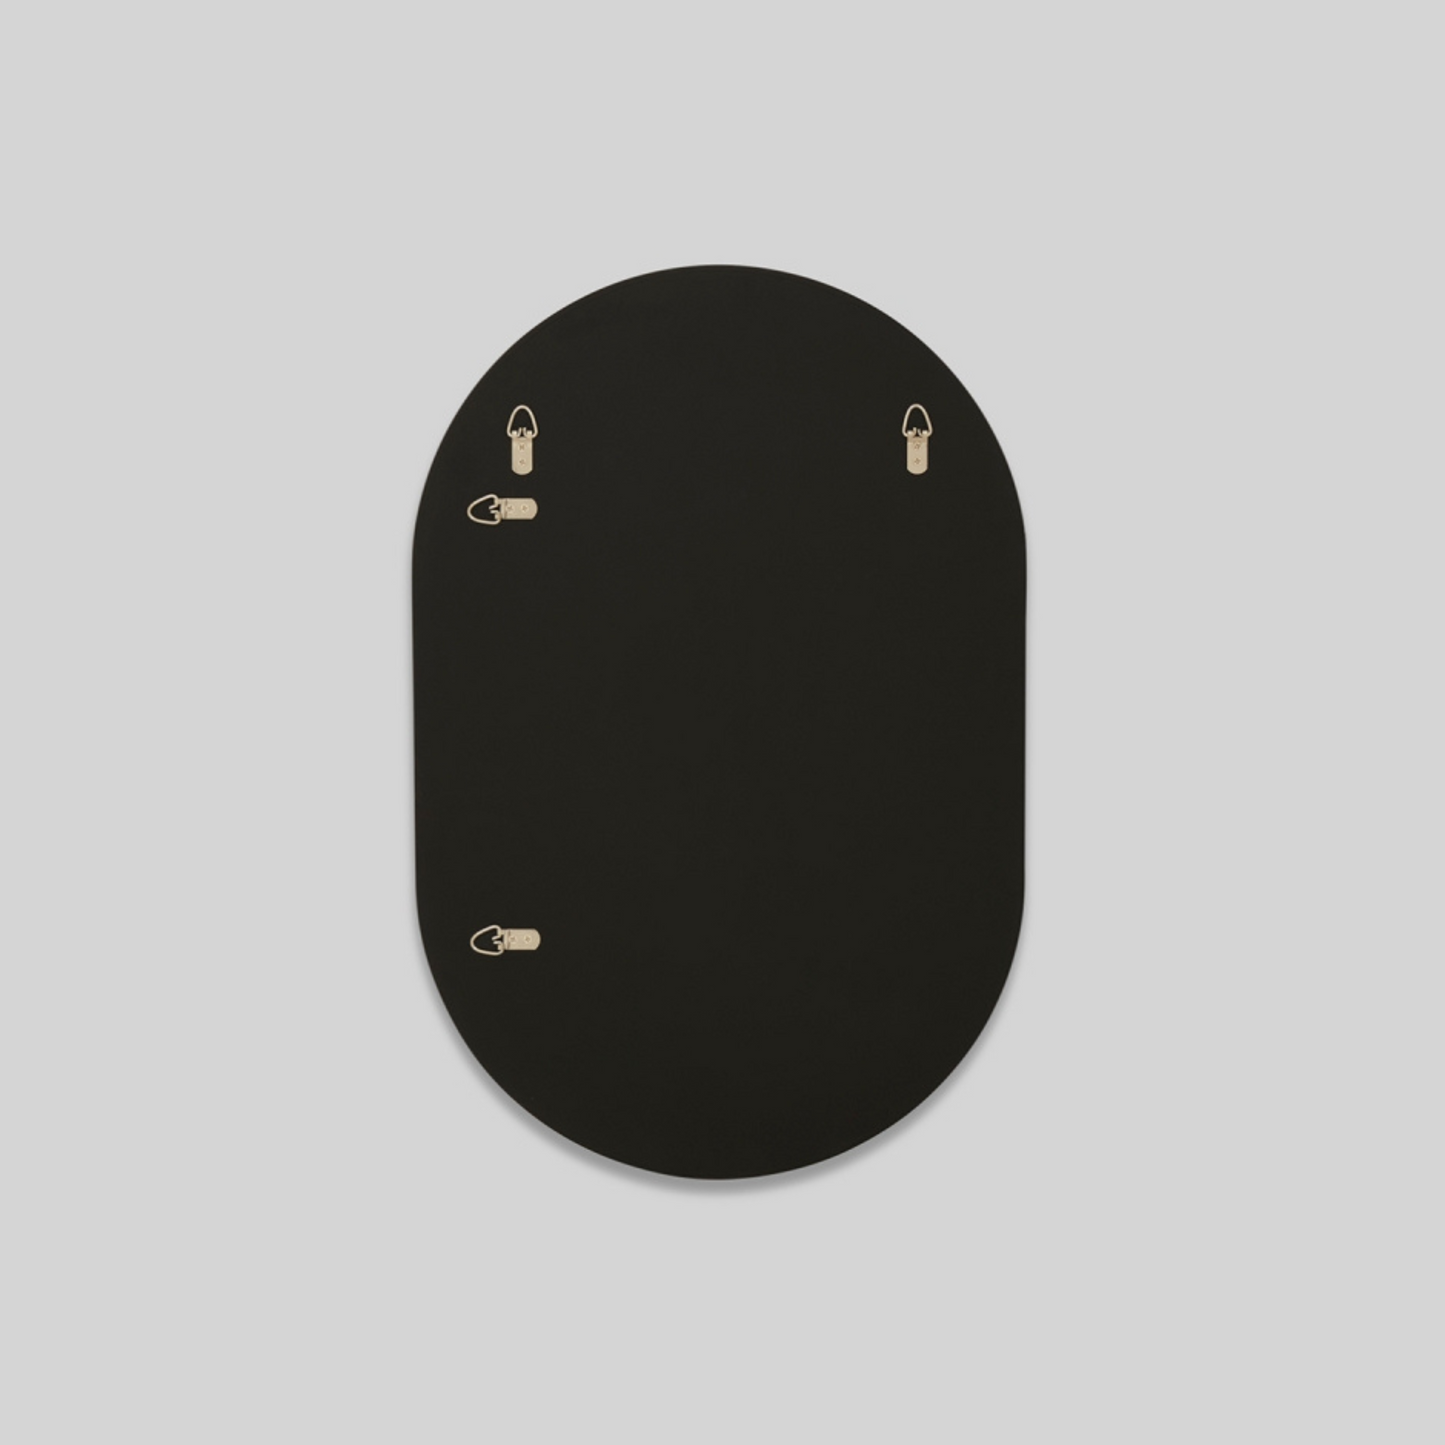 Bjorn Oval Mirror - Black 50cm x 75cm